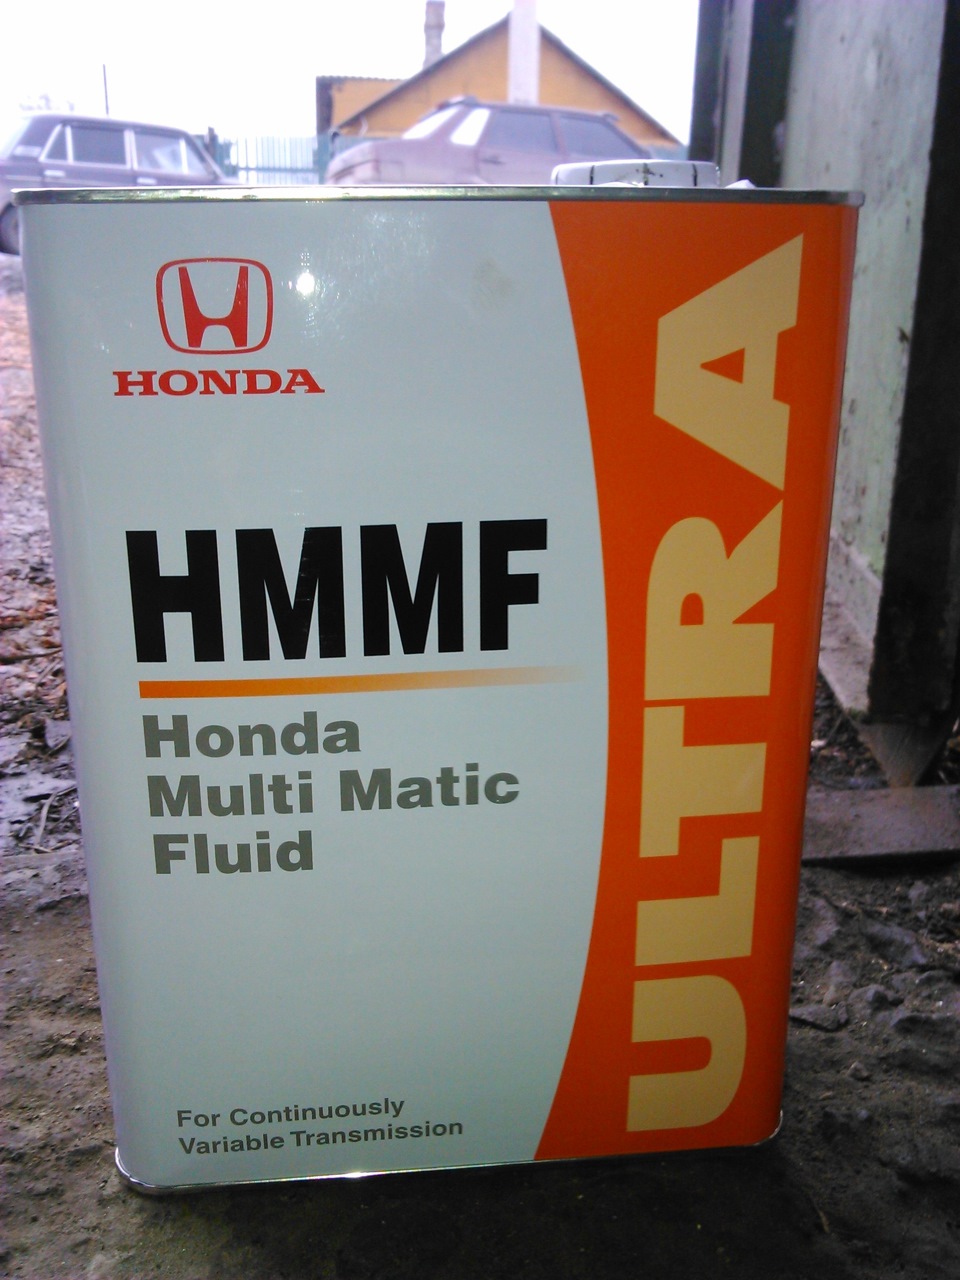 Honda fit какое масло. Хонда фит 1,3 масло в вариатор артикул. Масло в вариатор Хонда фит gd1 1.3. Масло в вариатор Хонда фит gd1 артикул. Масло вариатор Хонда фит gd1.